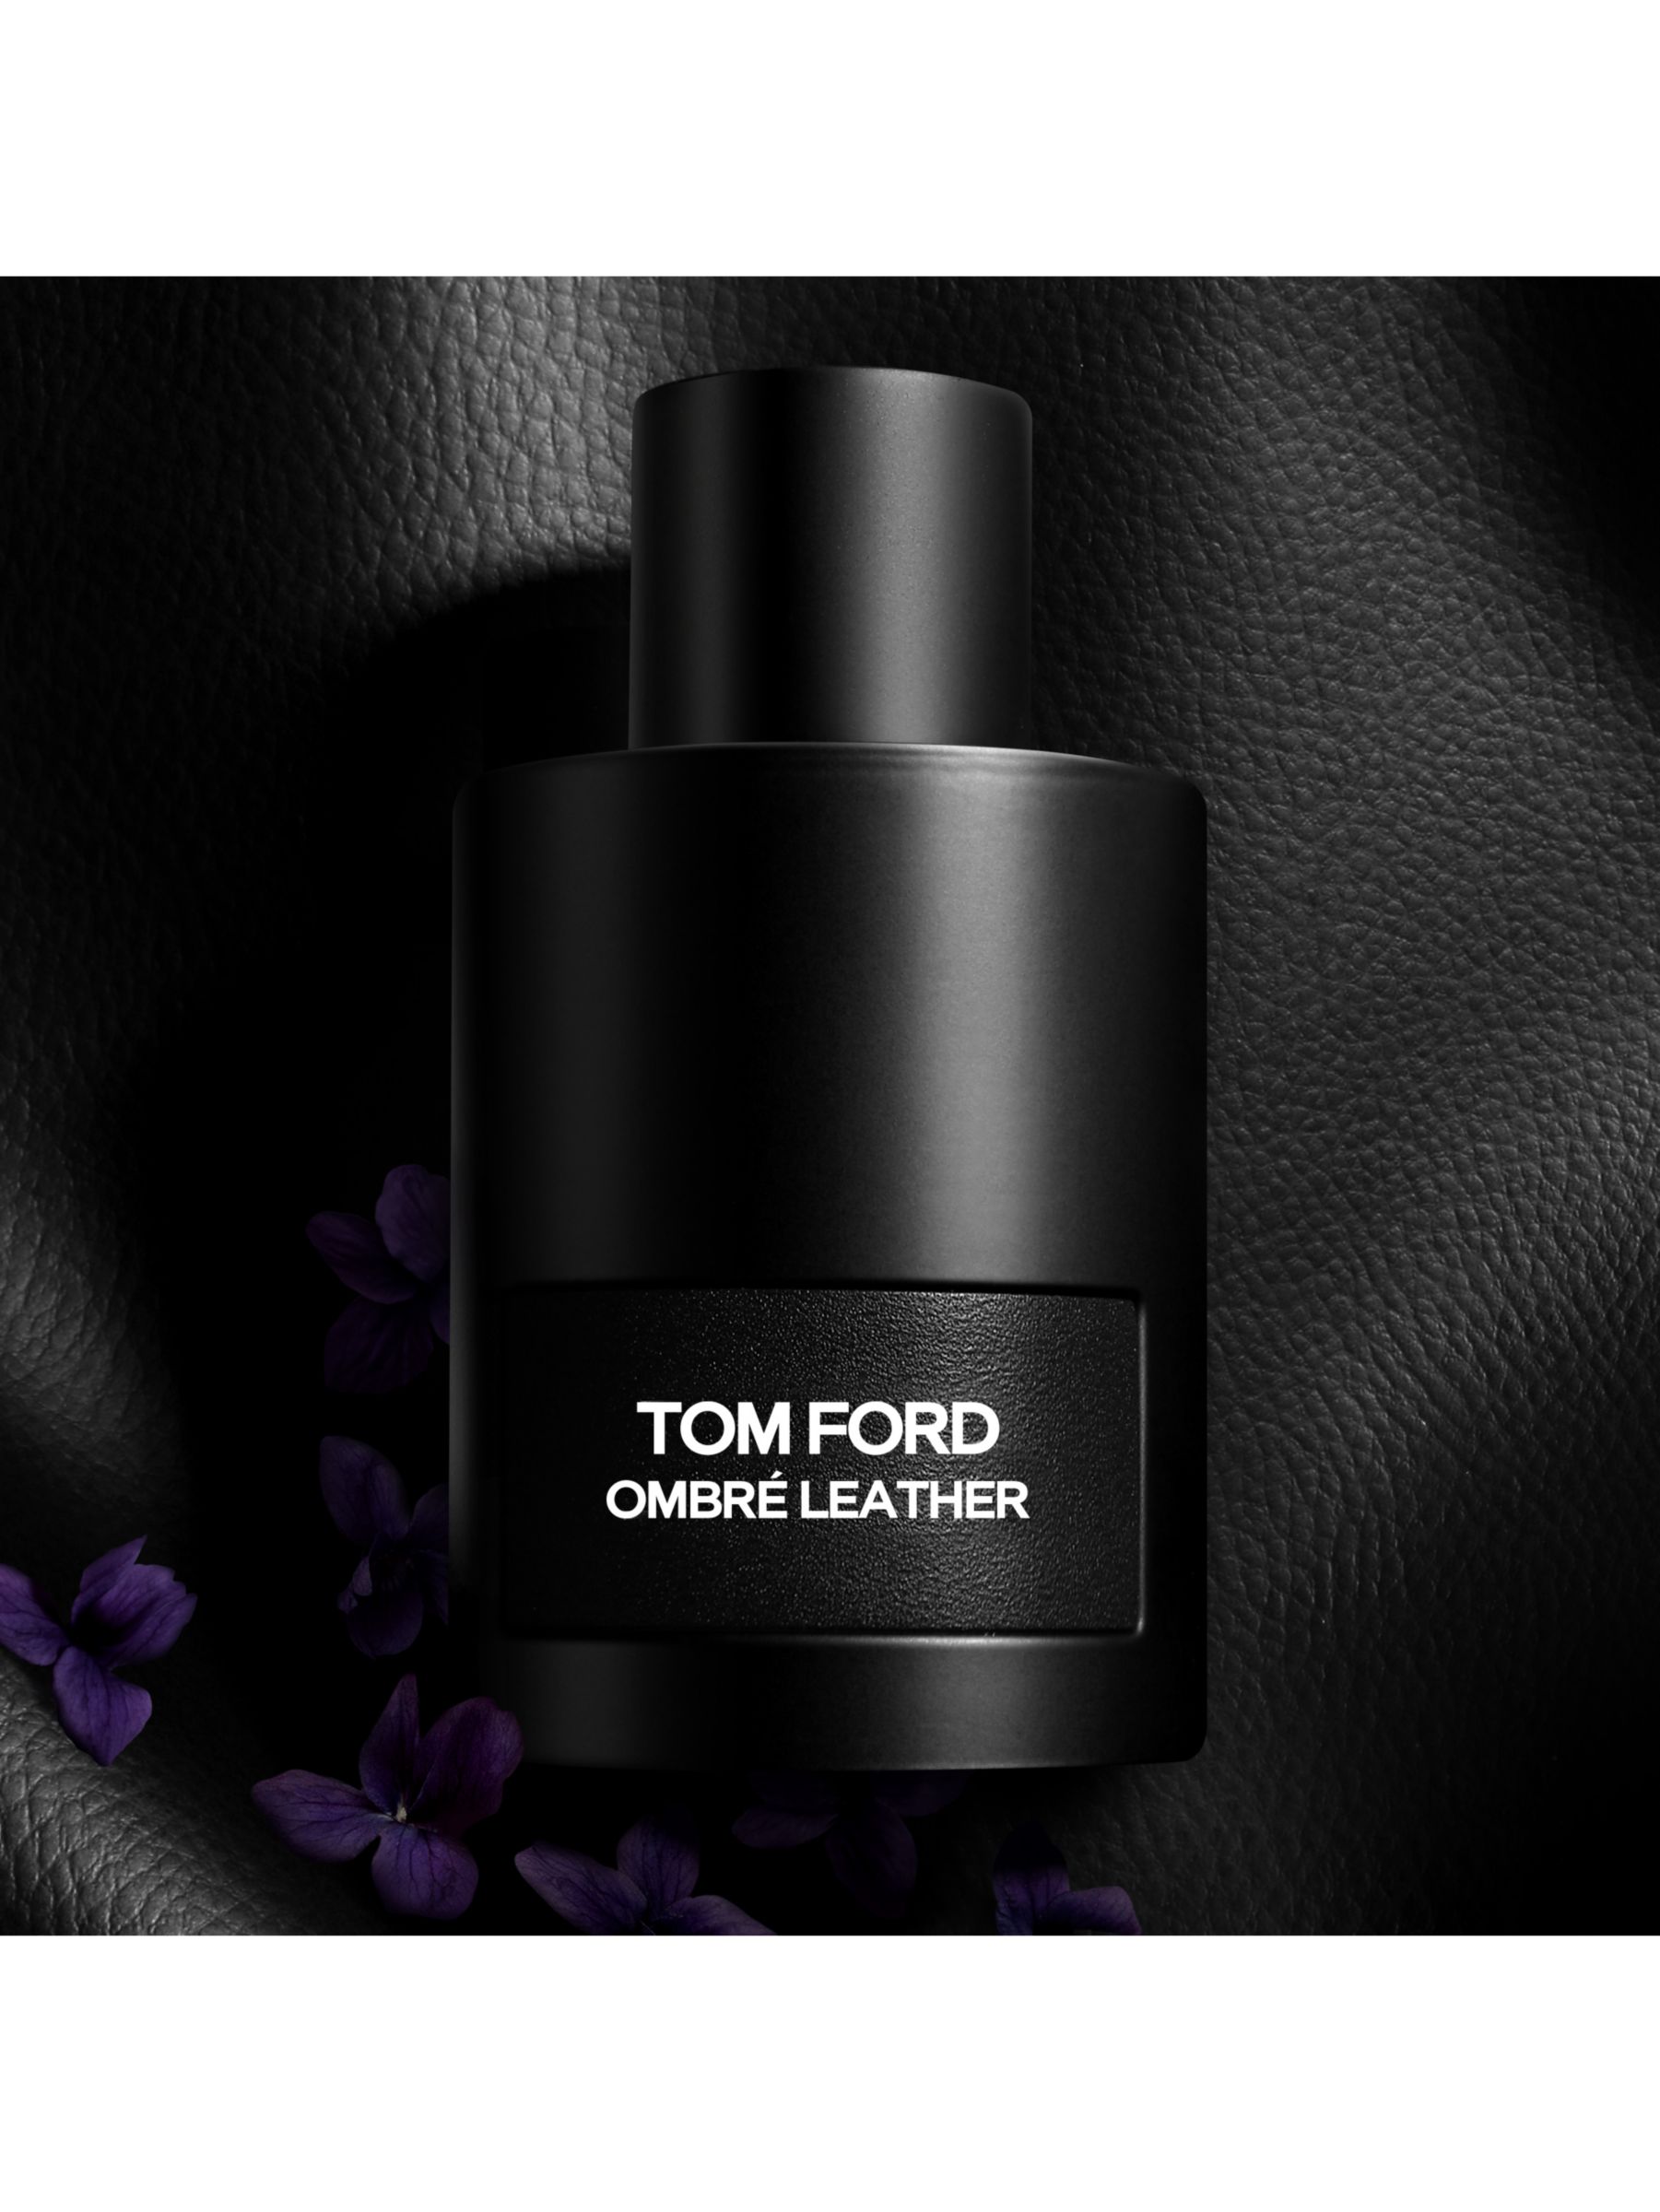 TOM FORD Ombré Leather Eau de Parfum at John Lewis & Partners